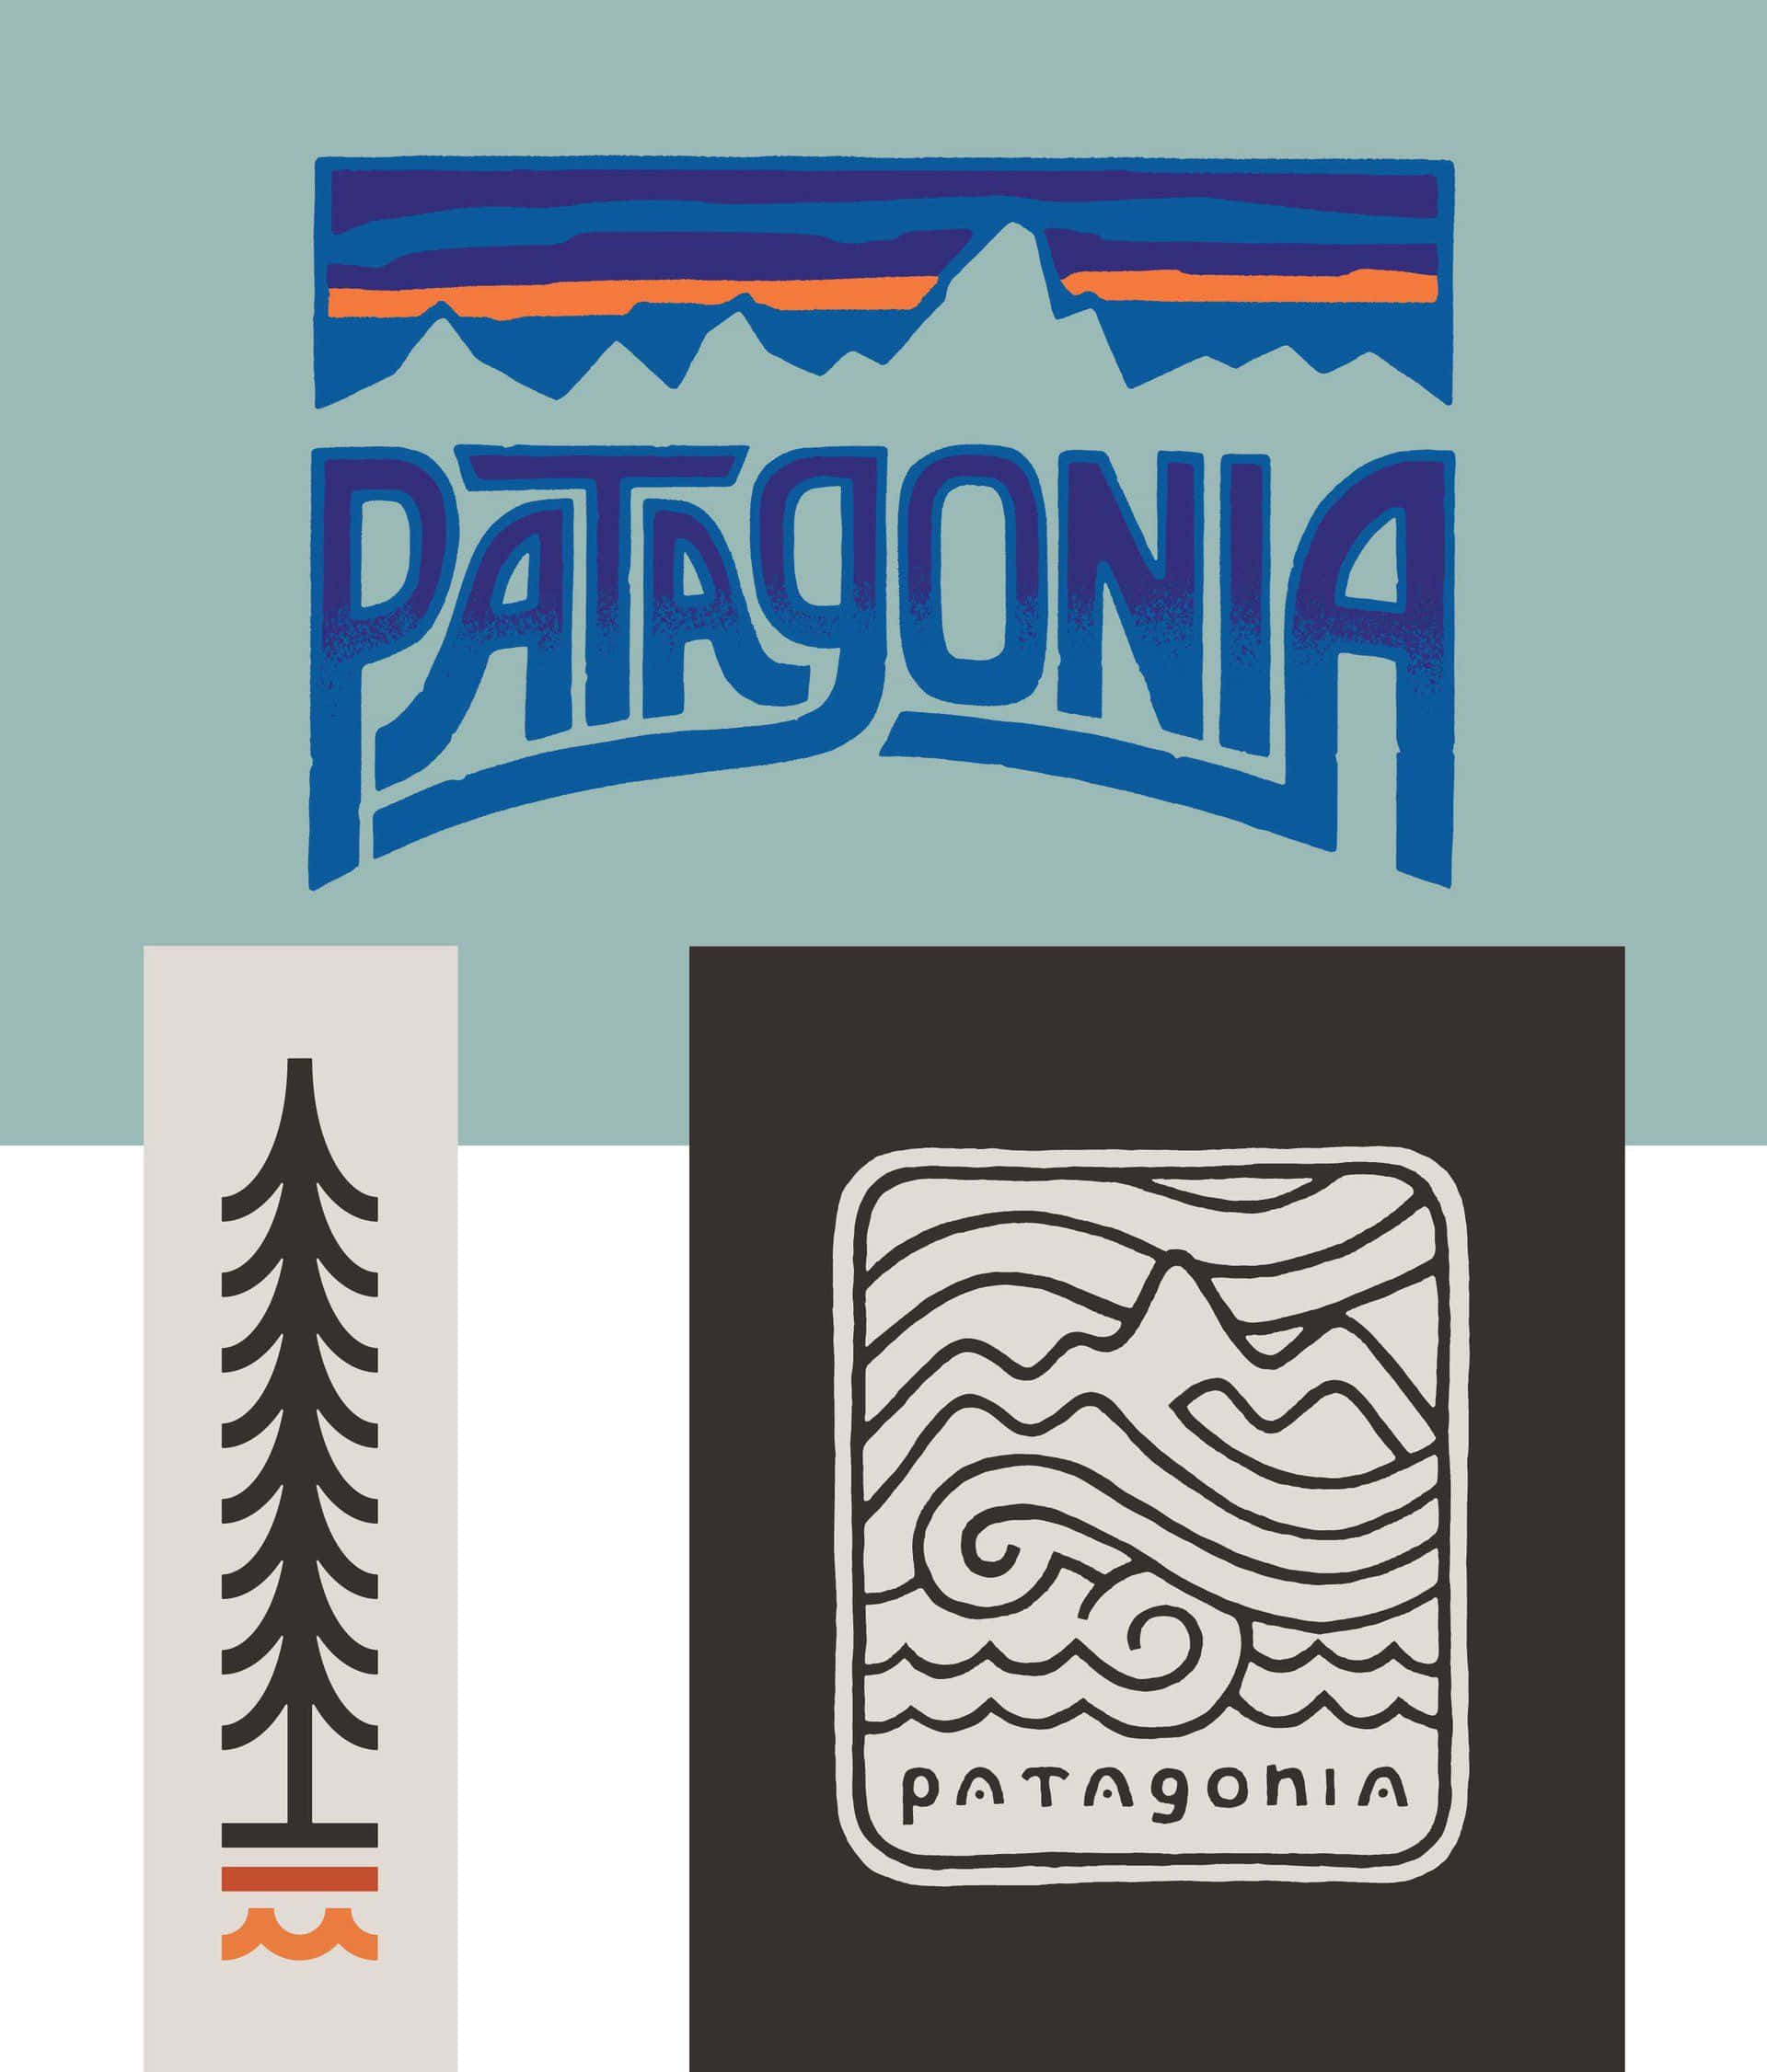 Hintergrundmit Patagonia-logo